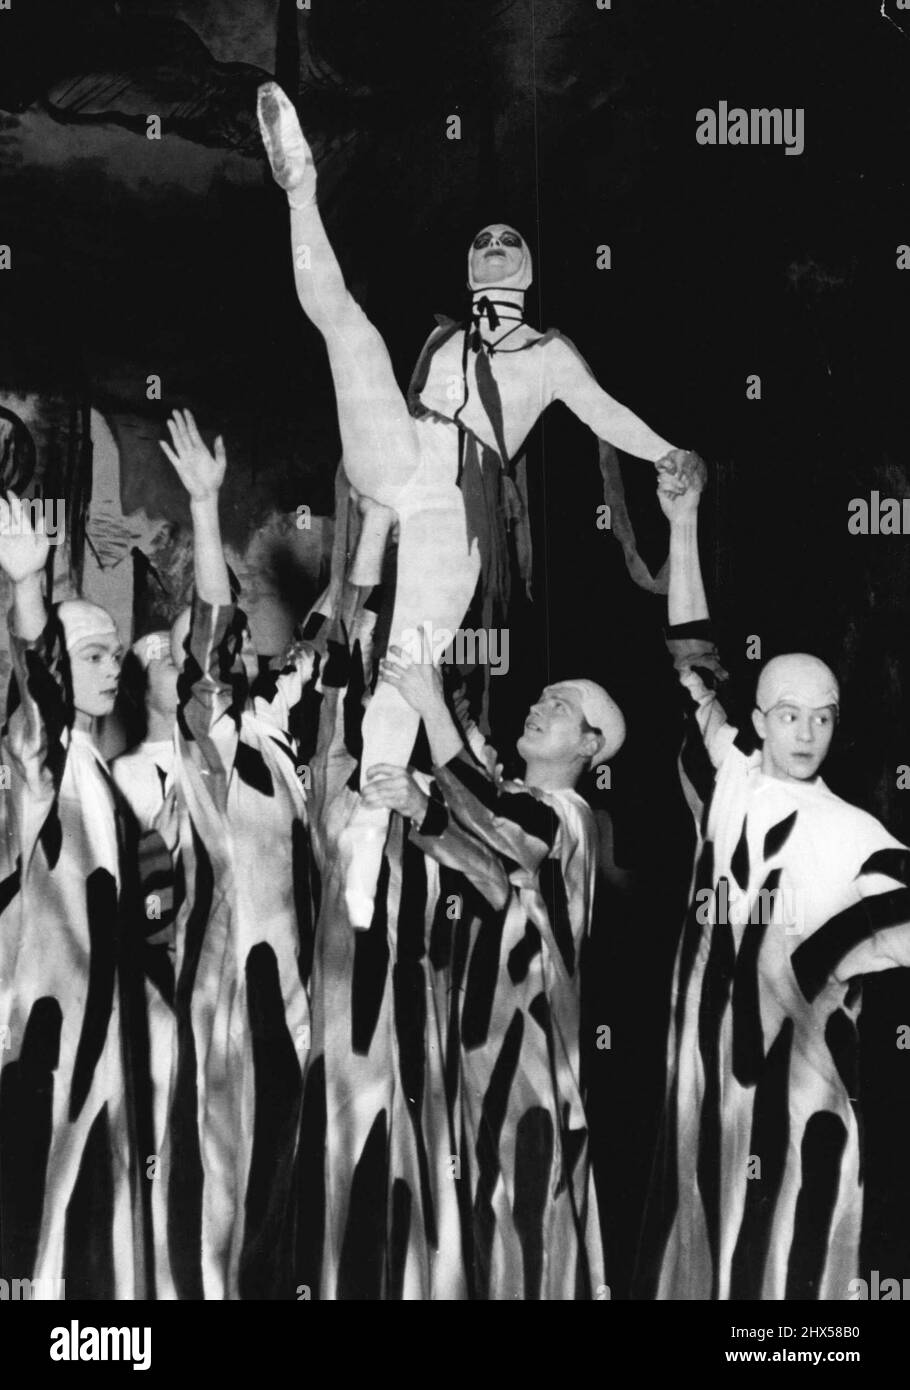 Tanz der Furien - Diese beeindruckende Szene zeigt den Tanz der Furien in Hadies, mit Ballerina July Drapal als Kopffurz. Es stammt aus der Neuproduktion von IGOR strawinskys Ballett 'Orpheus', die der Komponist nach dem Krieg auf Betreiben von George Balanchine, dem berühmten Choreographen, schrieb. Das Ballett, das 1948 erstmals in New York produziert wurde, folgt der bekannten Geschichte von „The Very“ und „Eurydike“ und verfügt über viele beeindruckende Szenen und spannende Musik. 01.Mai 1954. (Foto von Paul Popper, Paul Popper Ltd.). Stockfoto